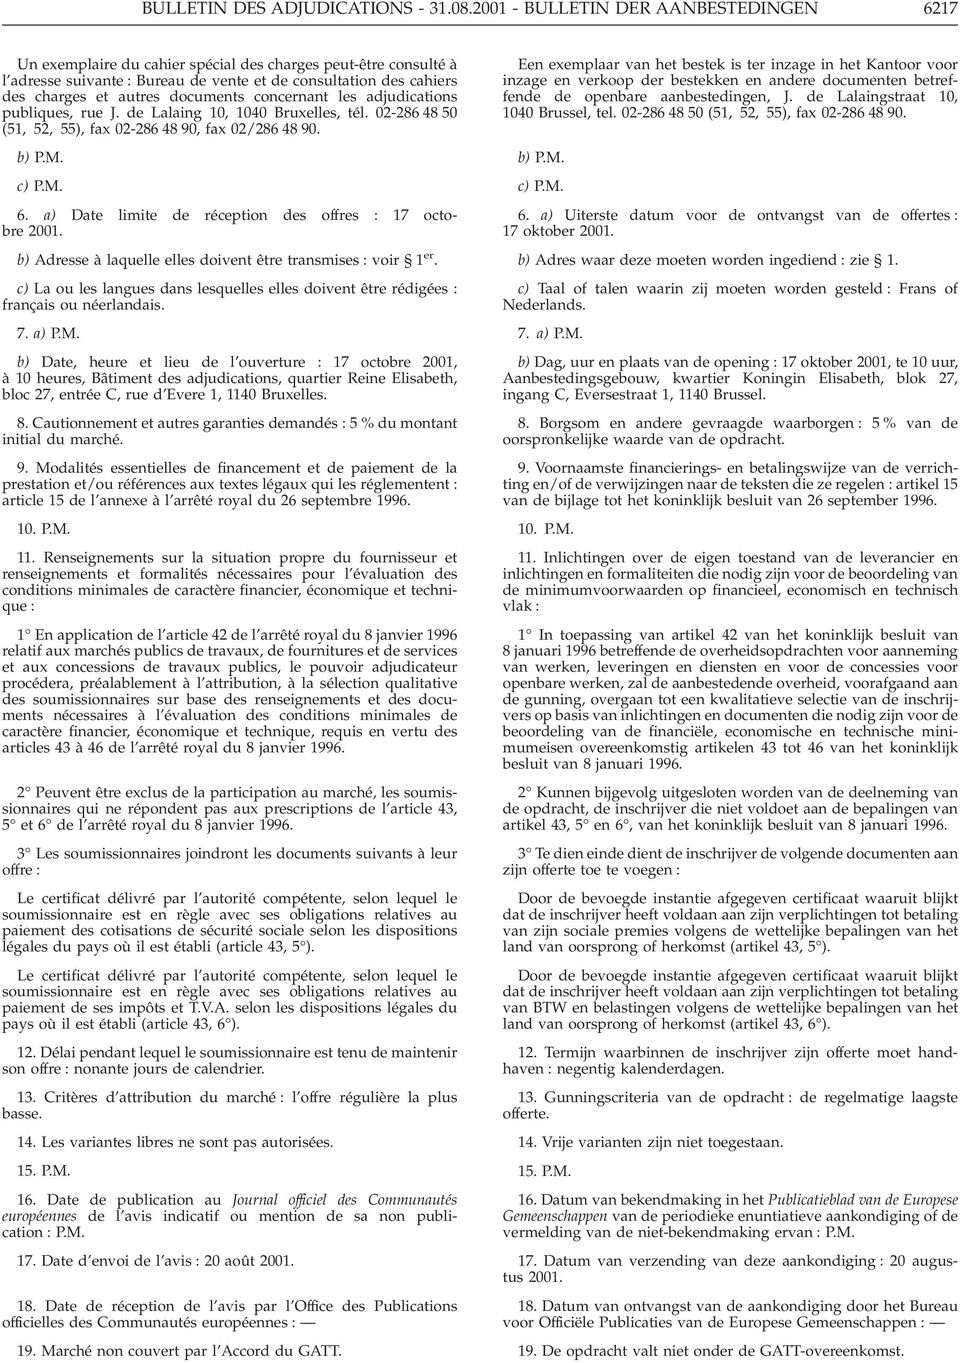 documents concernant les adjudications publiques, rue J. de Lalaing 10, 1040 Bruxelles, tél. 02-286 48 50 (51, 52, 55), fax 02-286 48 90, fax 02/286 48 90. b) P.M. c) P.M. 6.